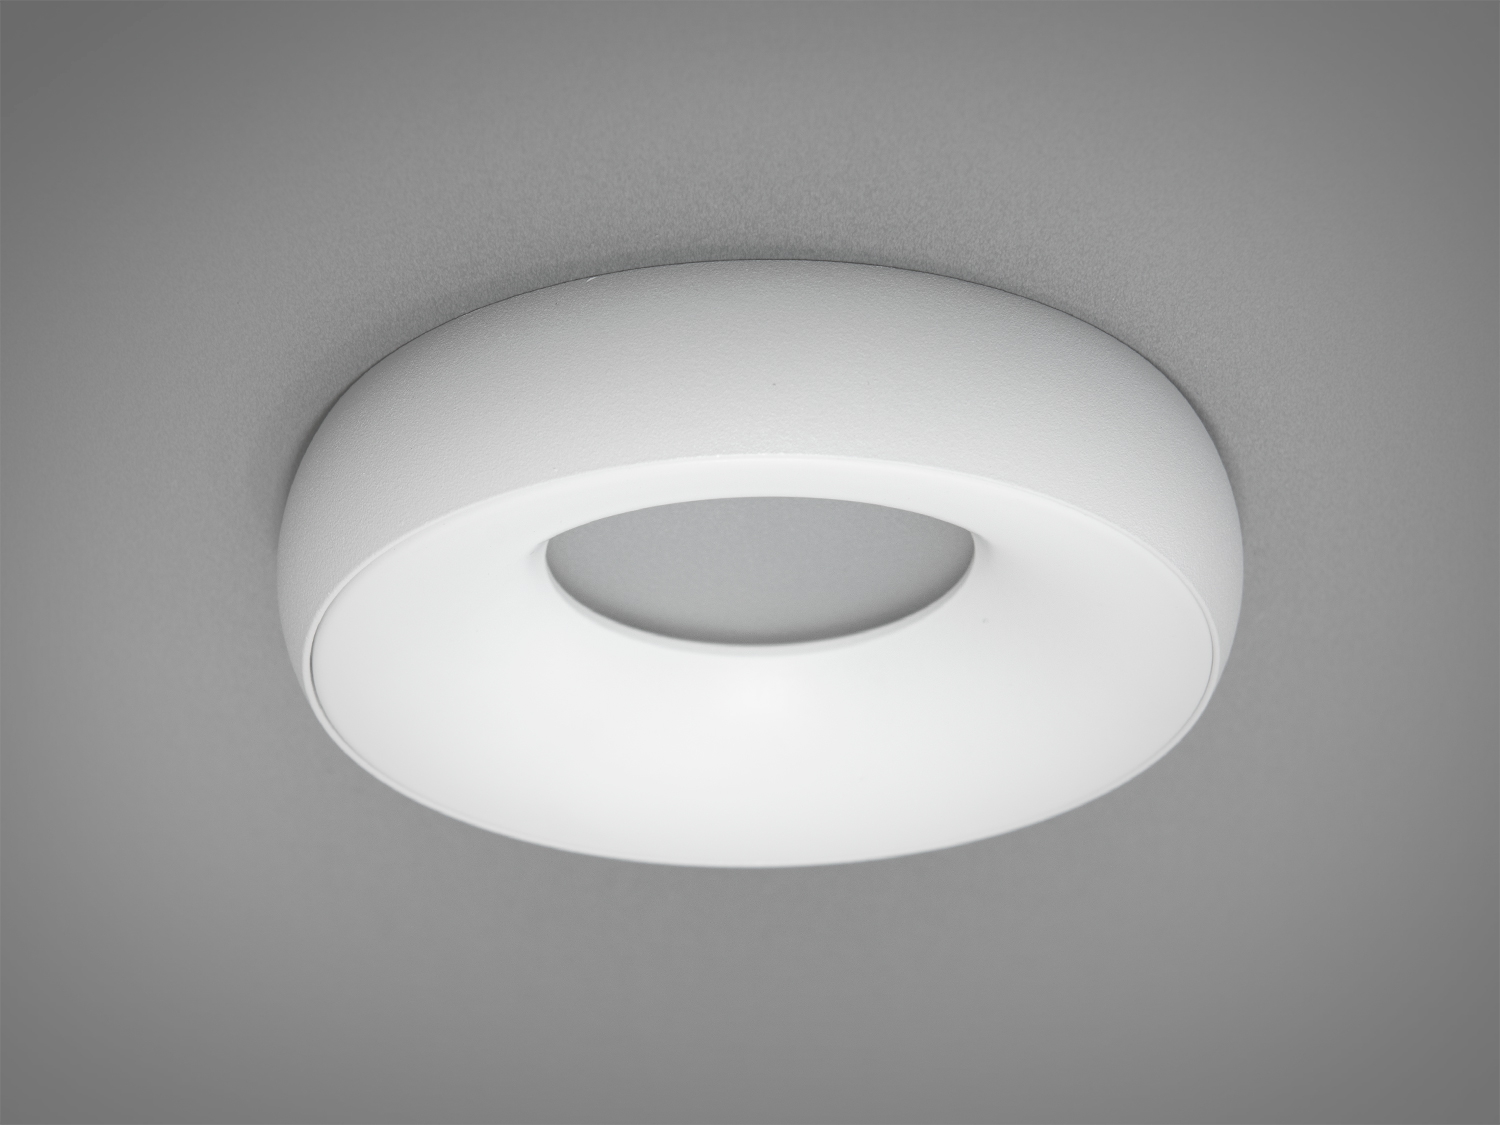 Круглий білий точковий врізний світильник із алюмінію. Доступність точкових світильників сприяє широкому їх застосуванню, для освітлювання приватних та комерційних просторів.